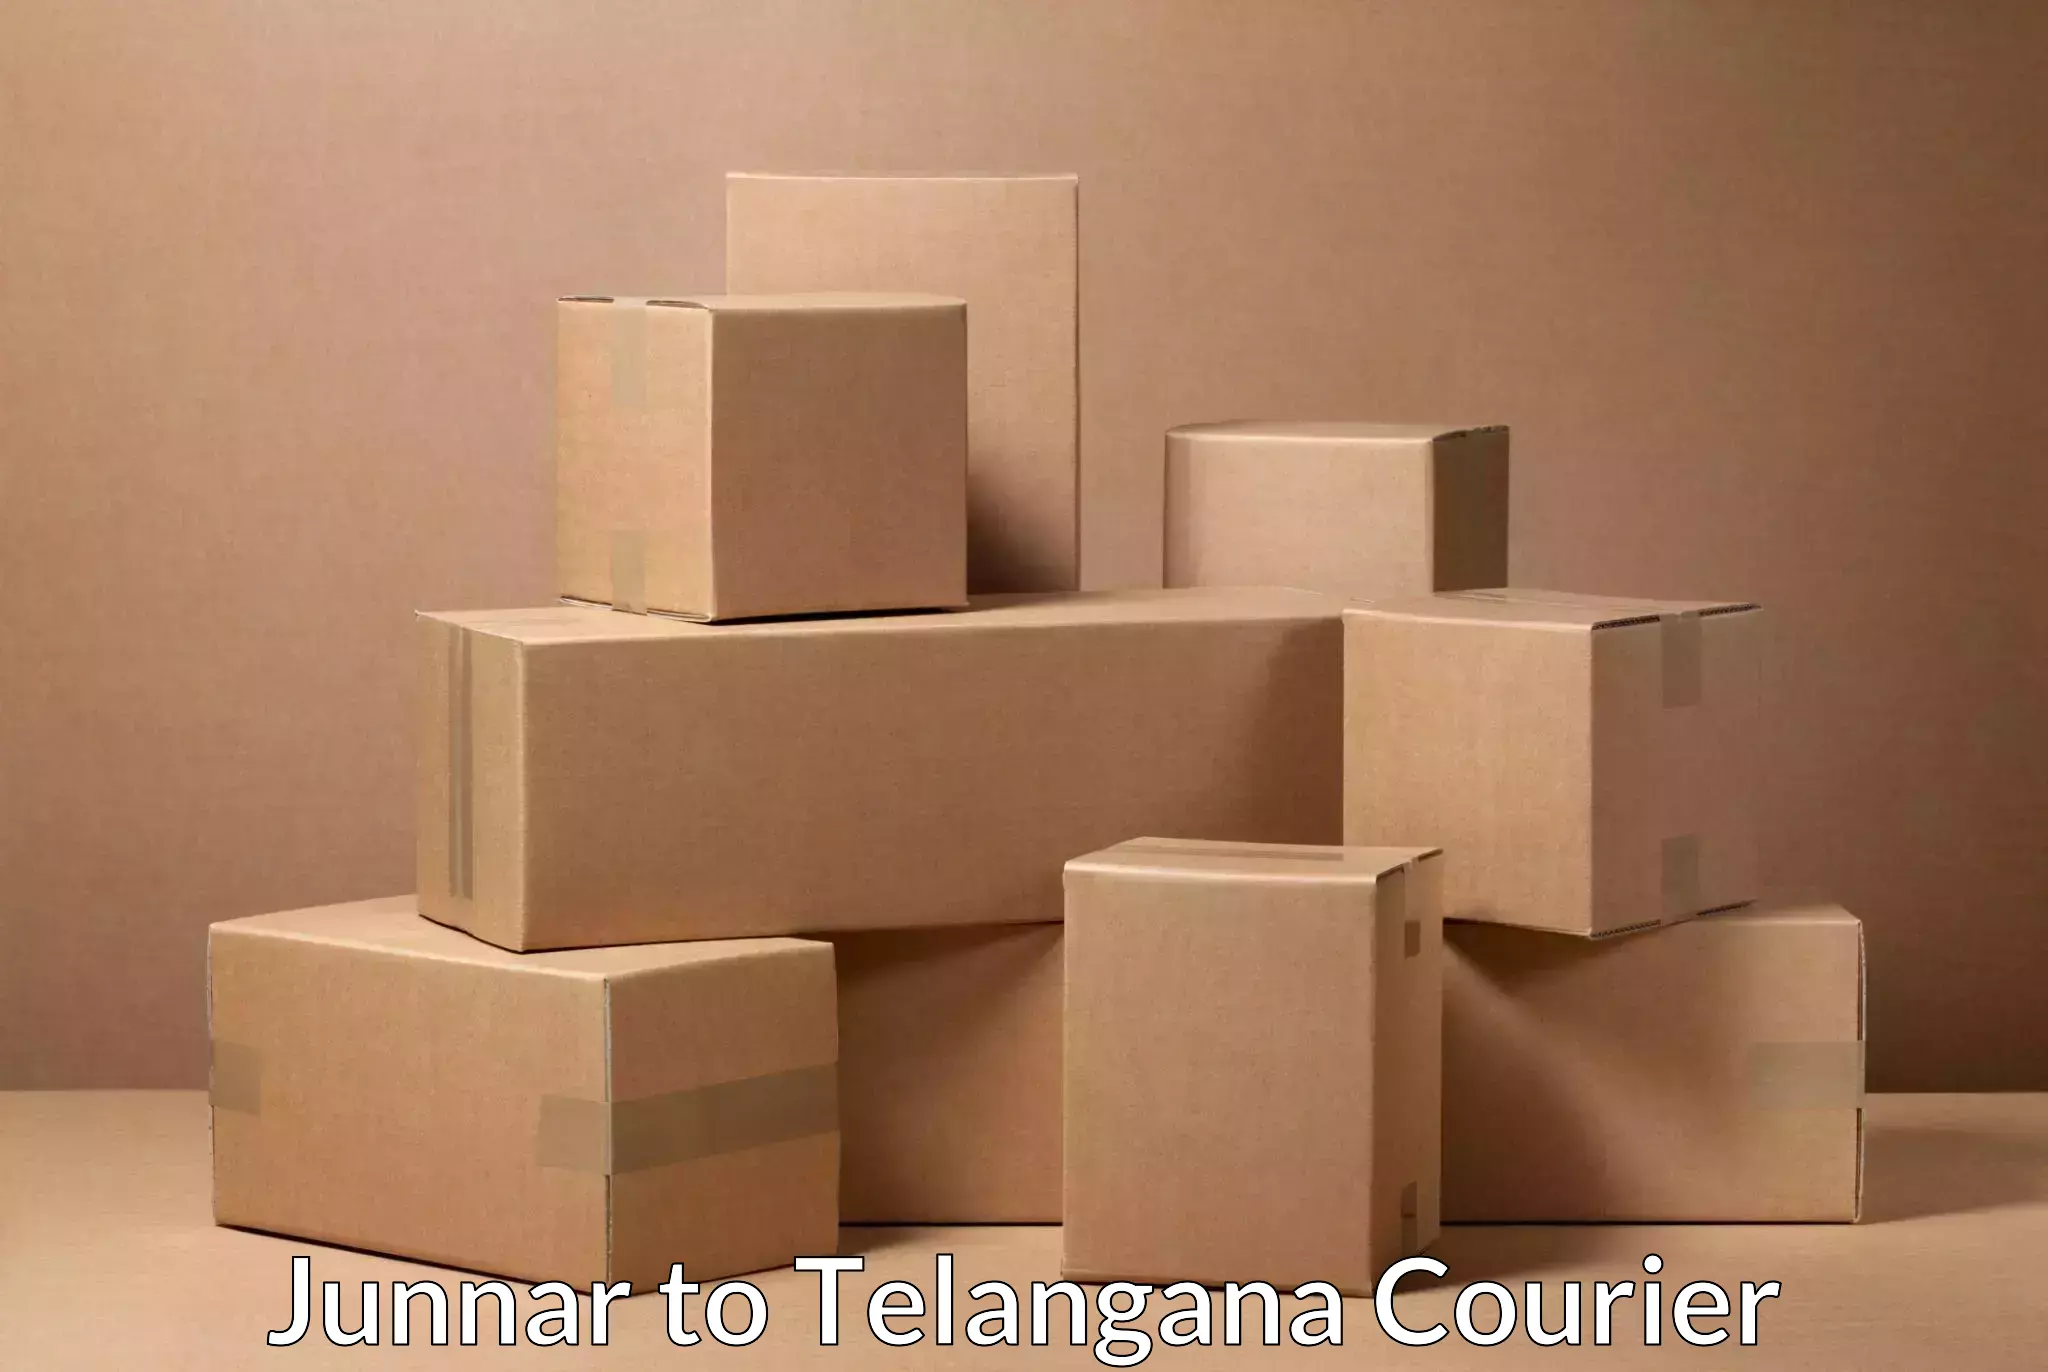 State-of-the-art courier technology Junnar to Karimnagar